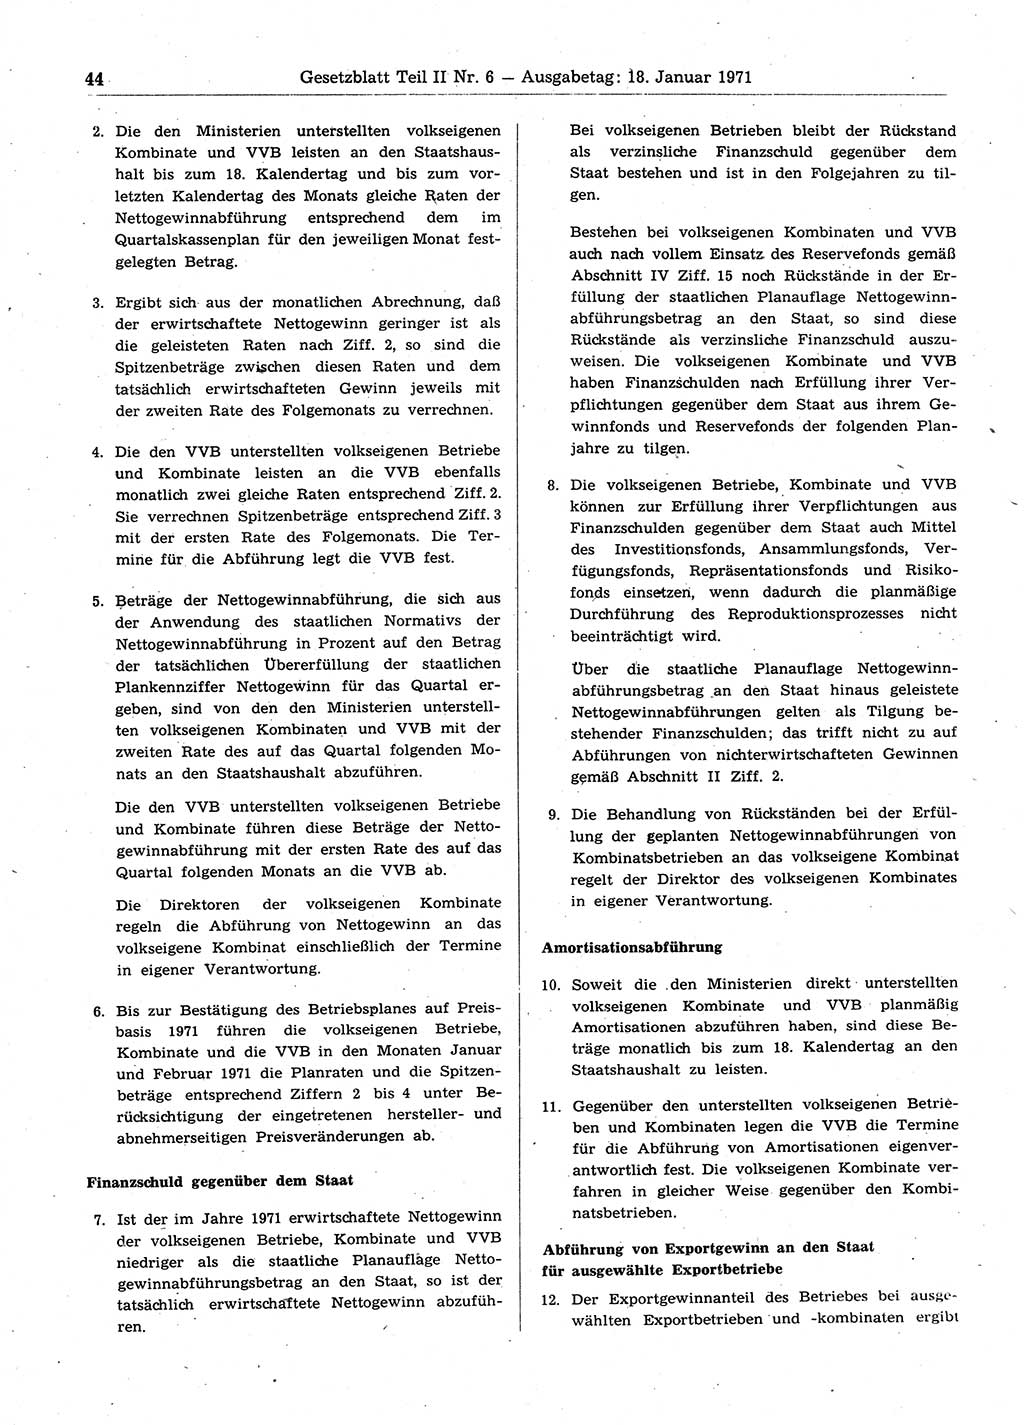 Gesetzblatt (GBl.) der Deutschen Demokratischen Republik (DDR) Teil ⅠⅠ 1971, Seite 44 (GBl. DDR ⅠⅠ 1971, S. 44)